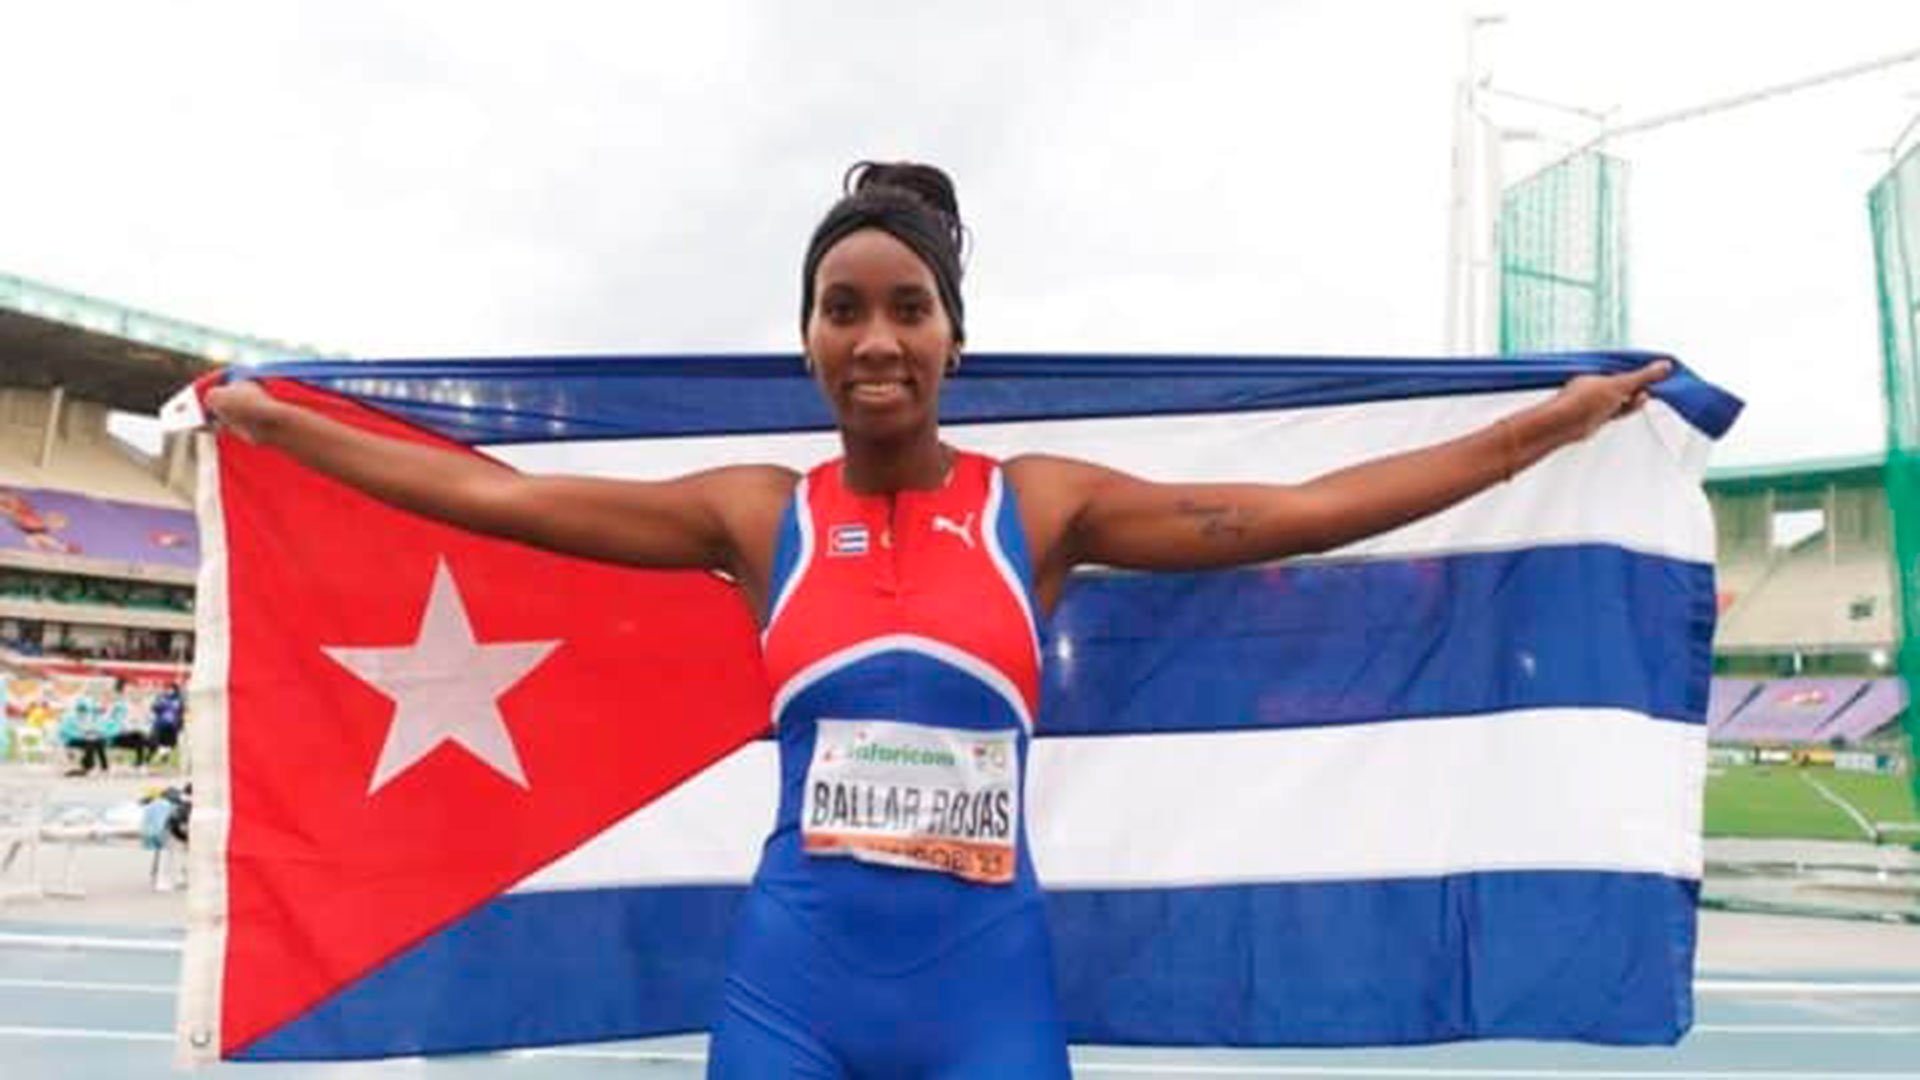 Yiselena Ballar Rojas desertó del equipo de atletismo de Cuba

